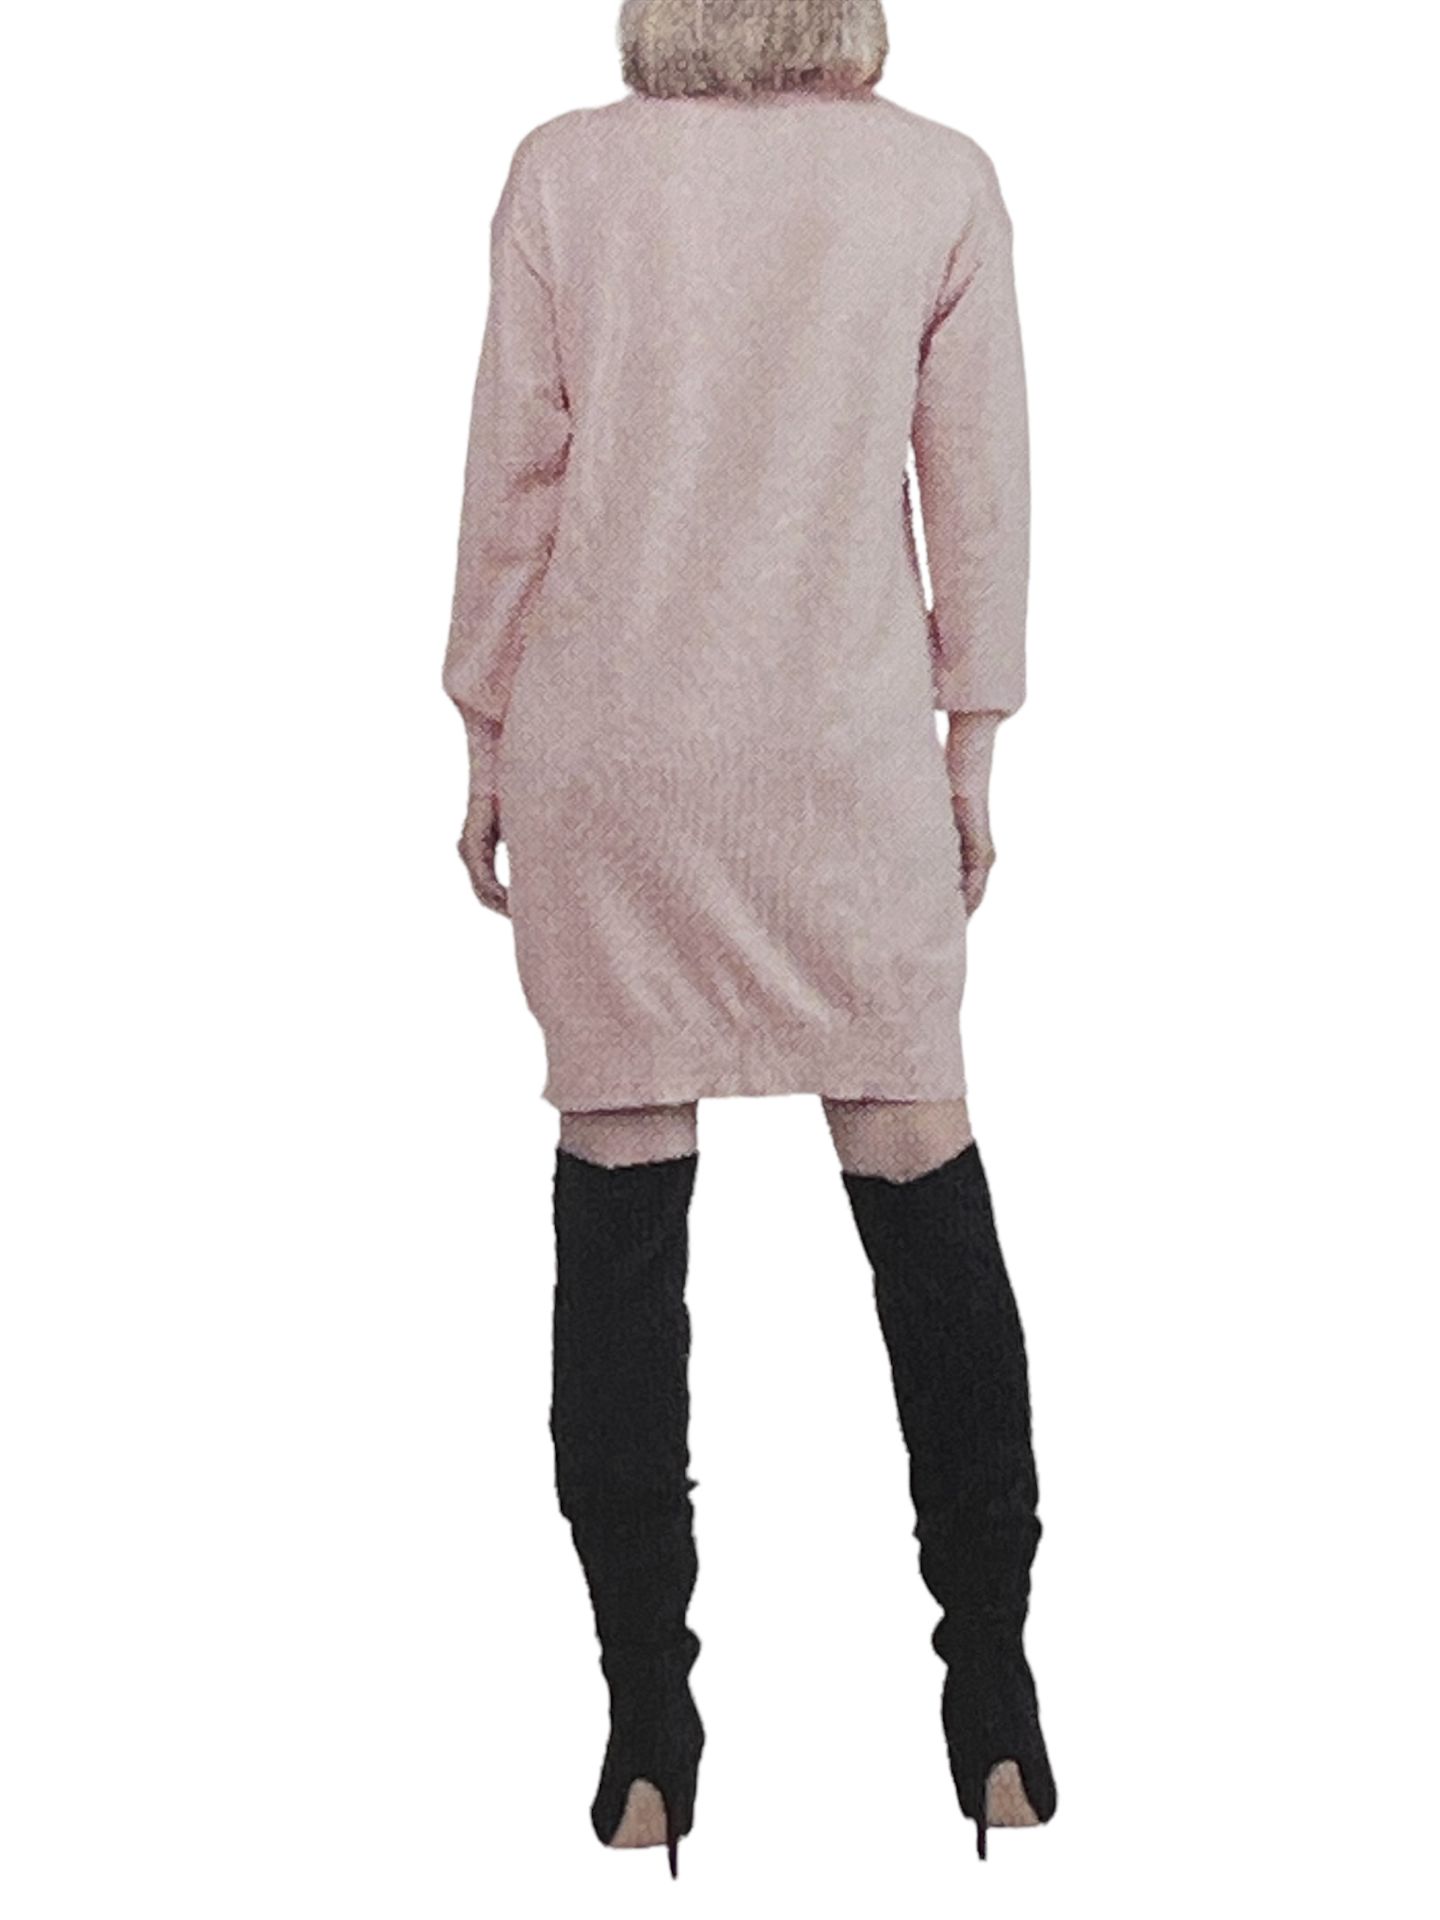 Designer Badgley Mischka Lightweight Fine Knitted Stretchy Jumper Dress UK 14 (L - Image 2 of 7